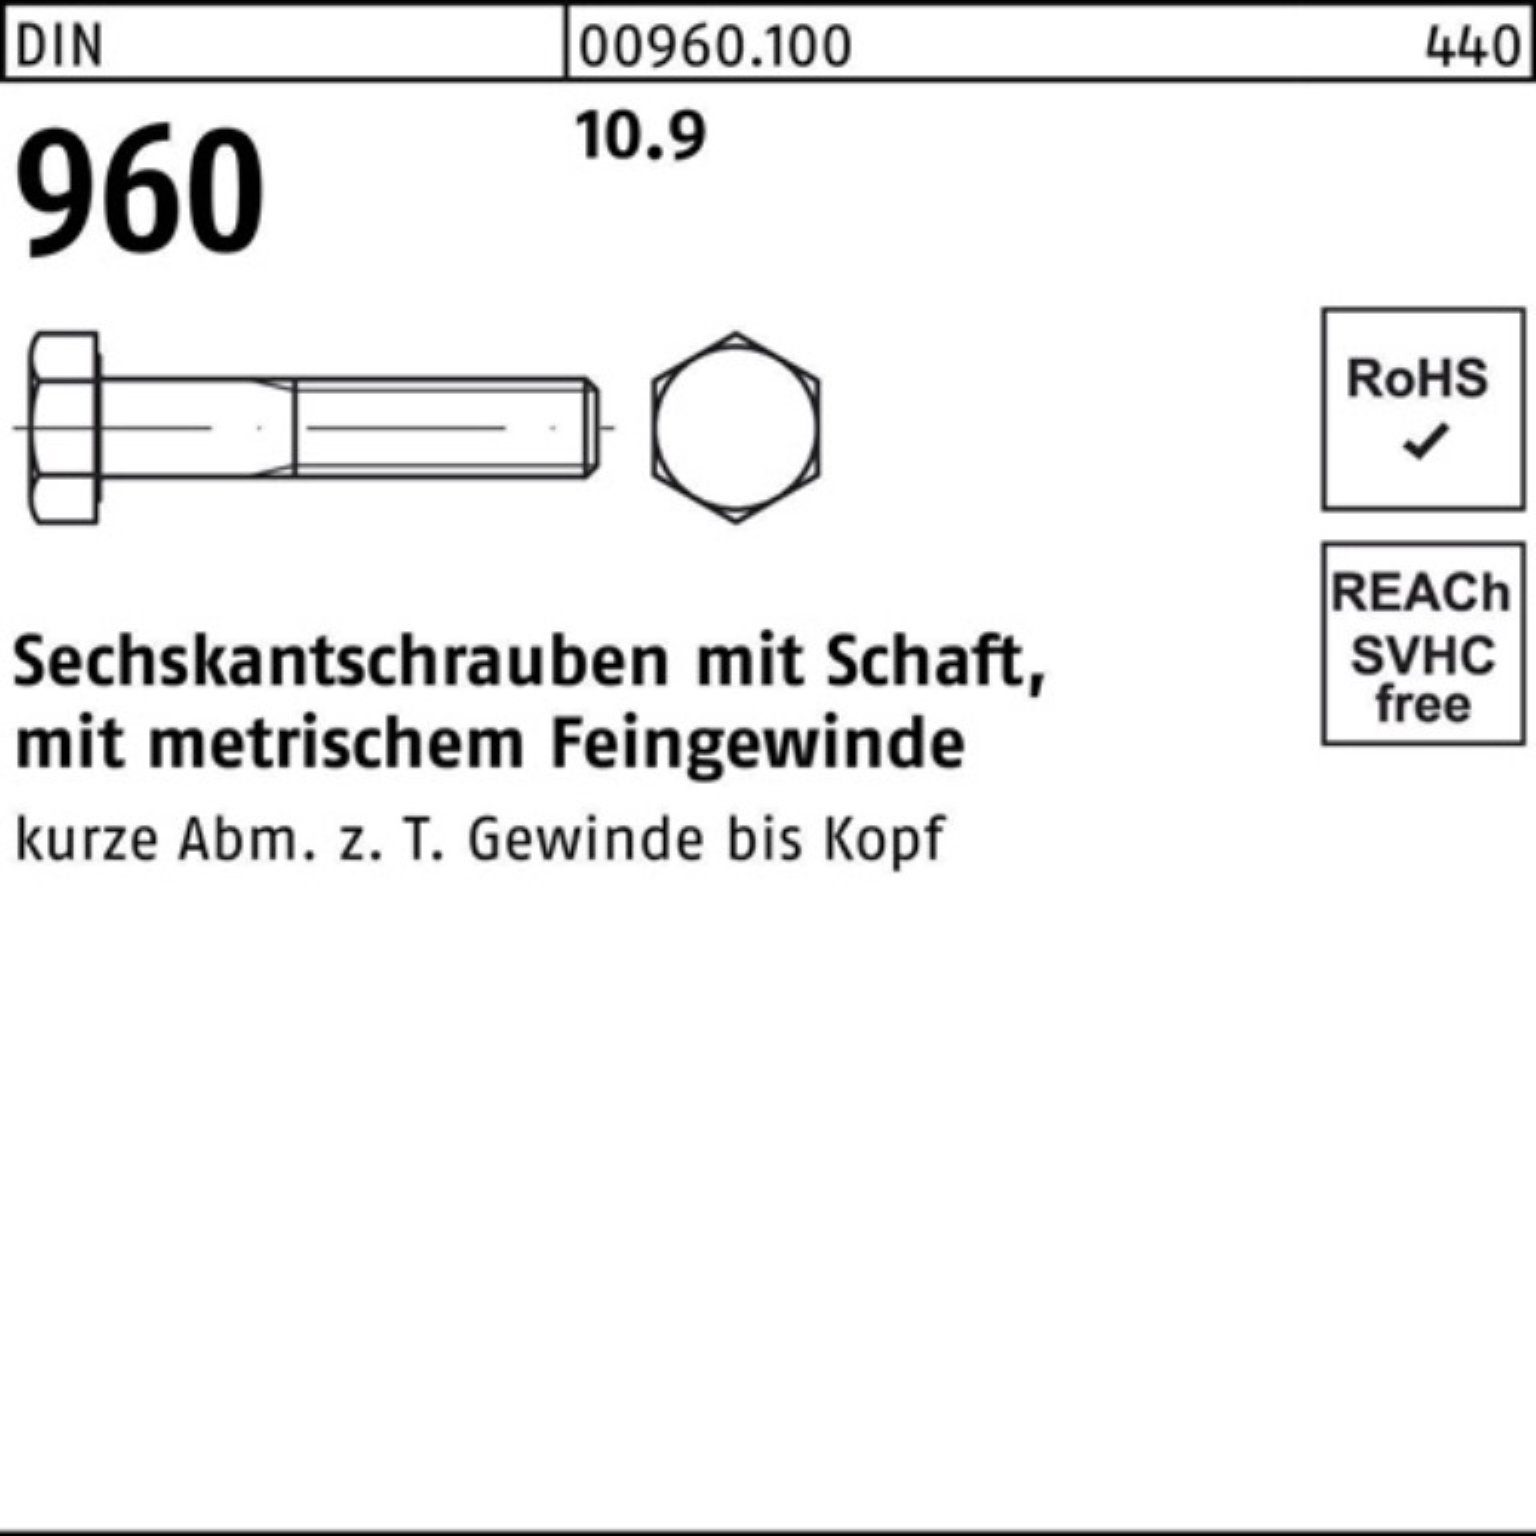 Sechskantschraube Reyher M10x1,25x 100er 960 Sechskantschraube Schaft 45 DIN Stü 10.9 Pack 100